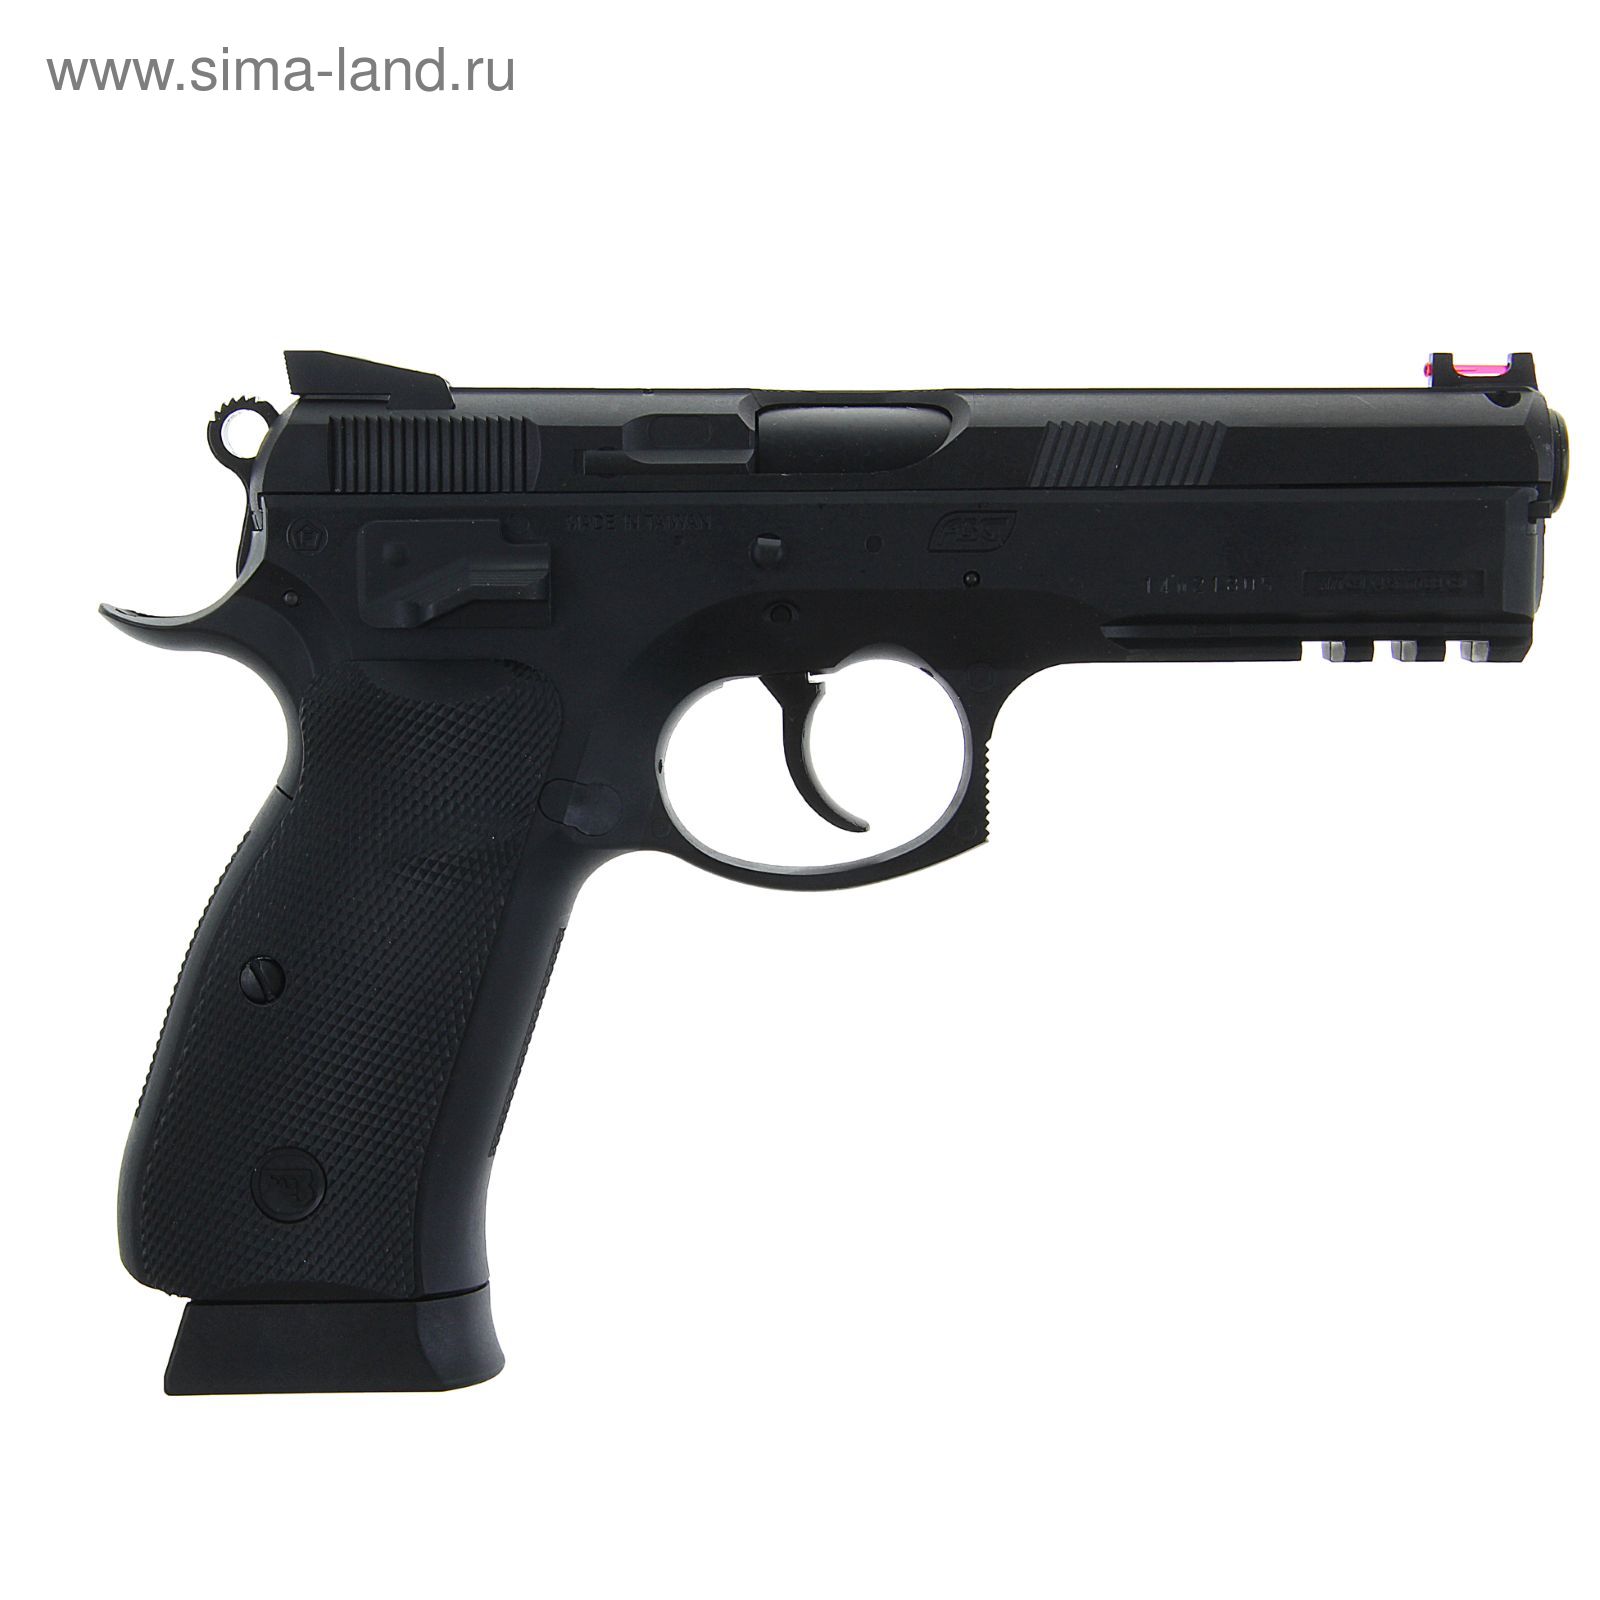 Пистолет пневматический CZ SP-01 SHADOW (17526) кал. 4,5 мм